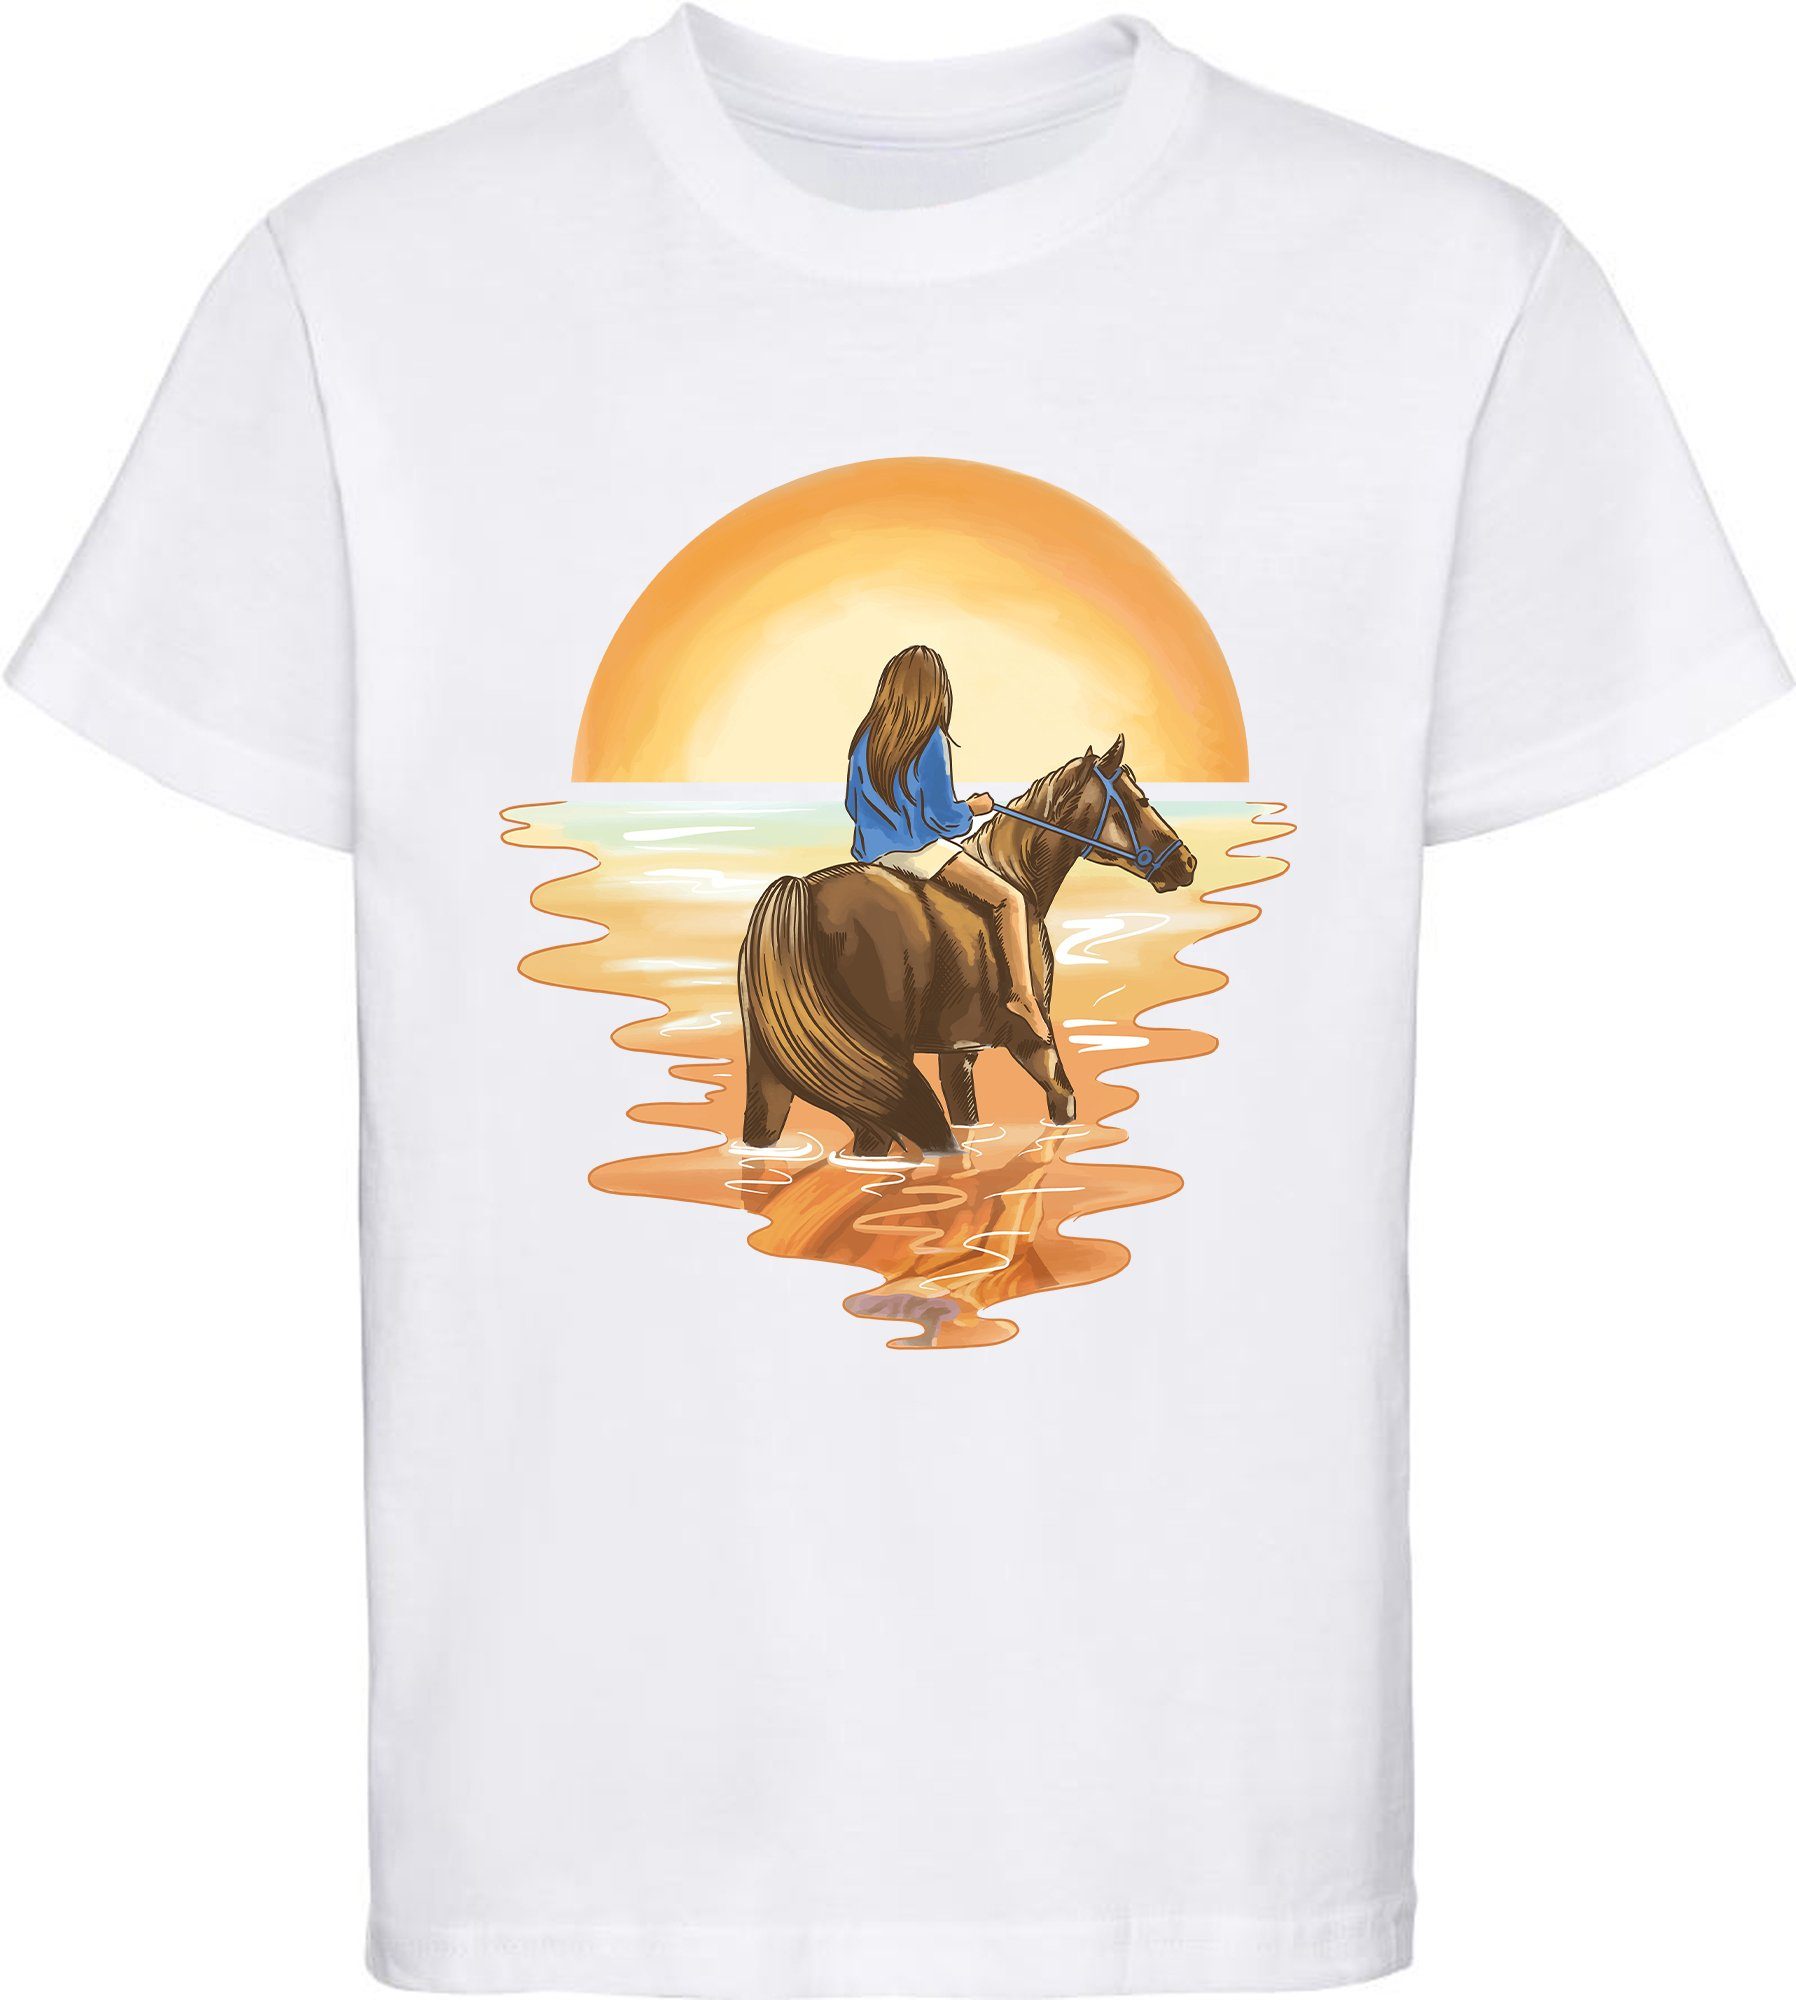 MyDesign24 Print-Shirt bedrucktes Mädchen mit Pferd T-Shirt Aufdruck, Wasser im mit weiss Baumwollshirt i140 Reiterin